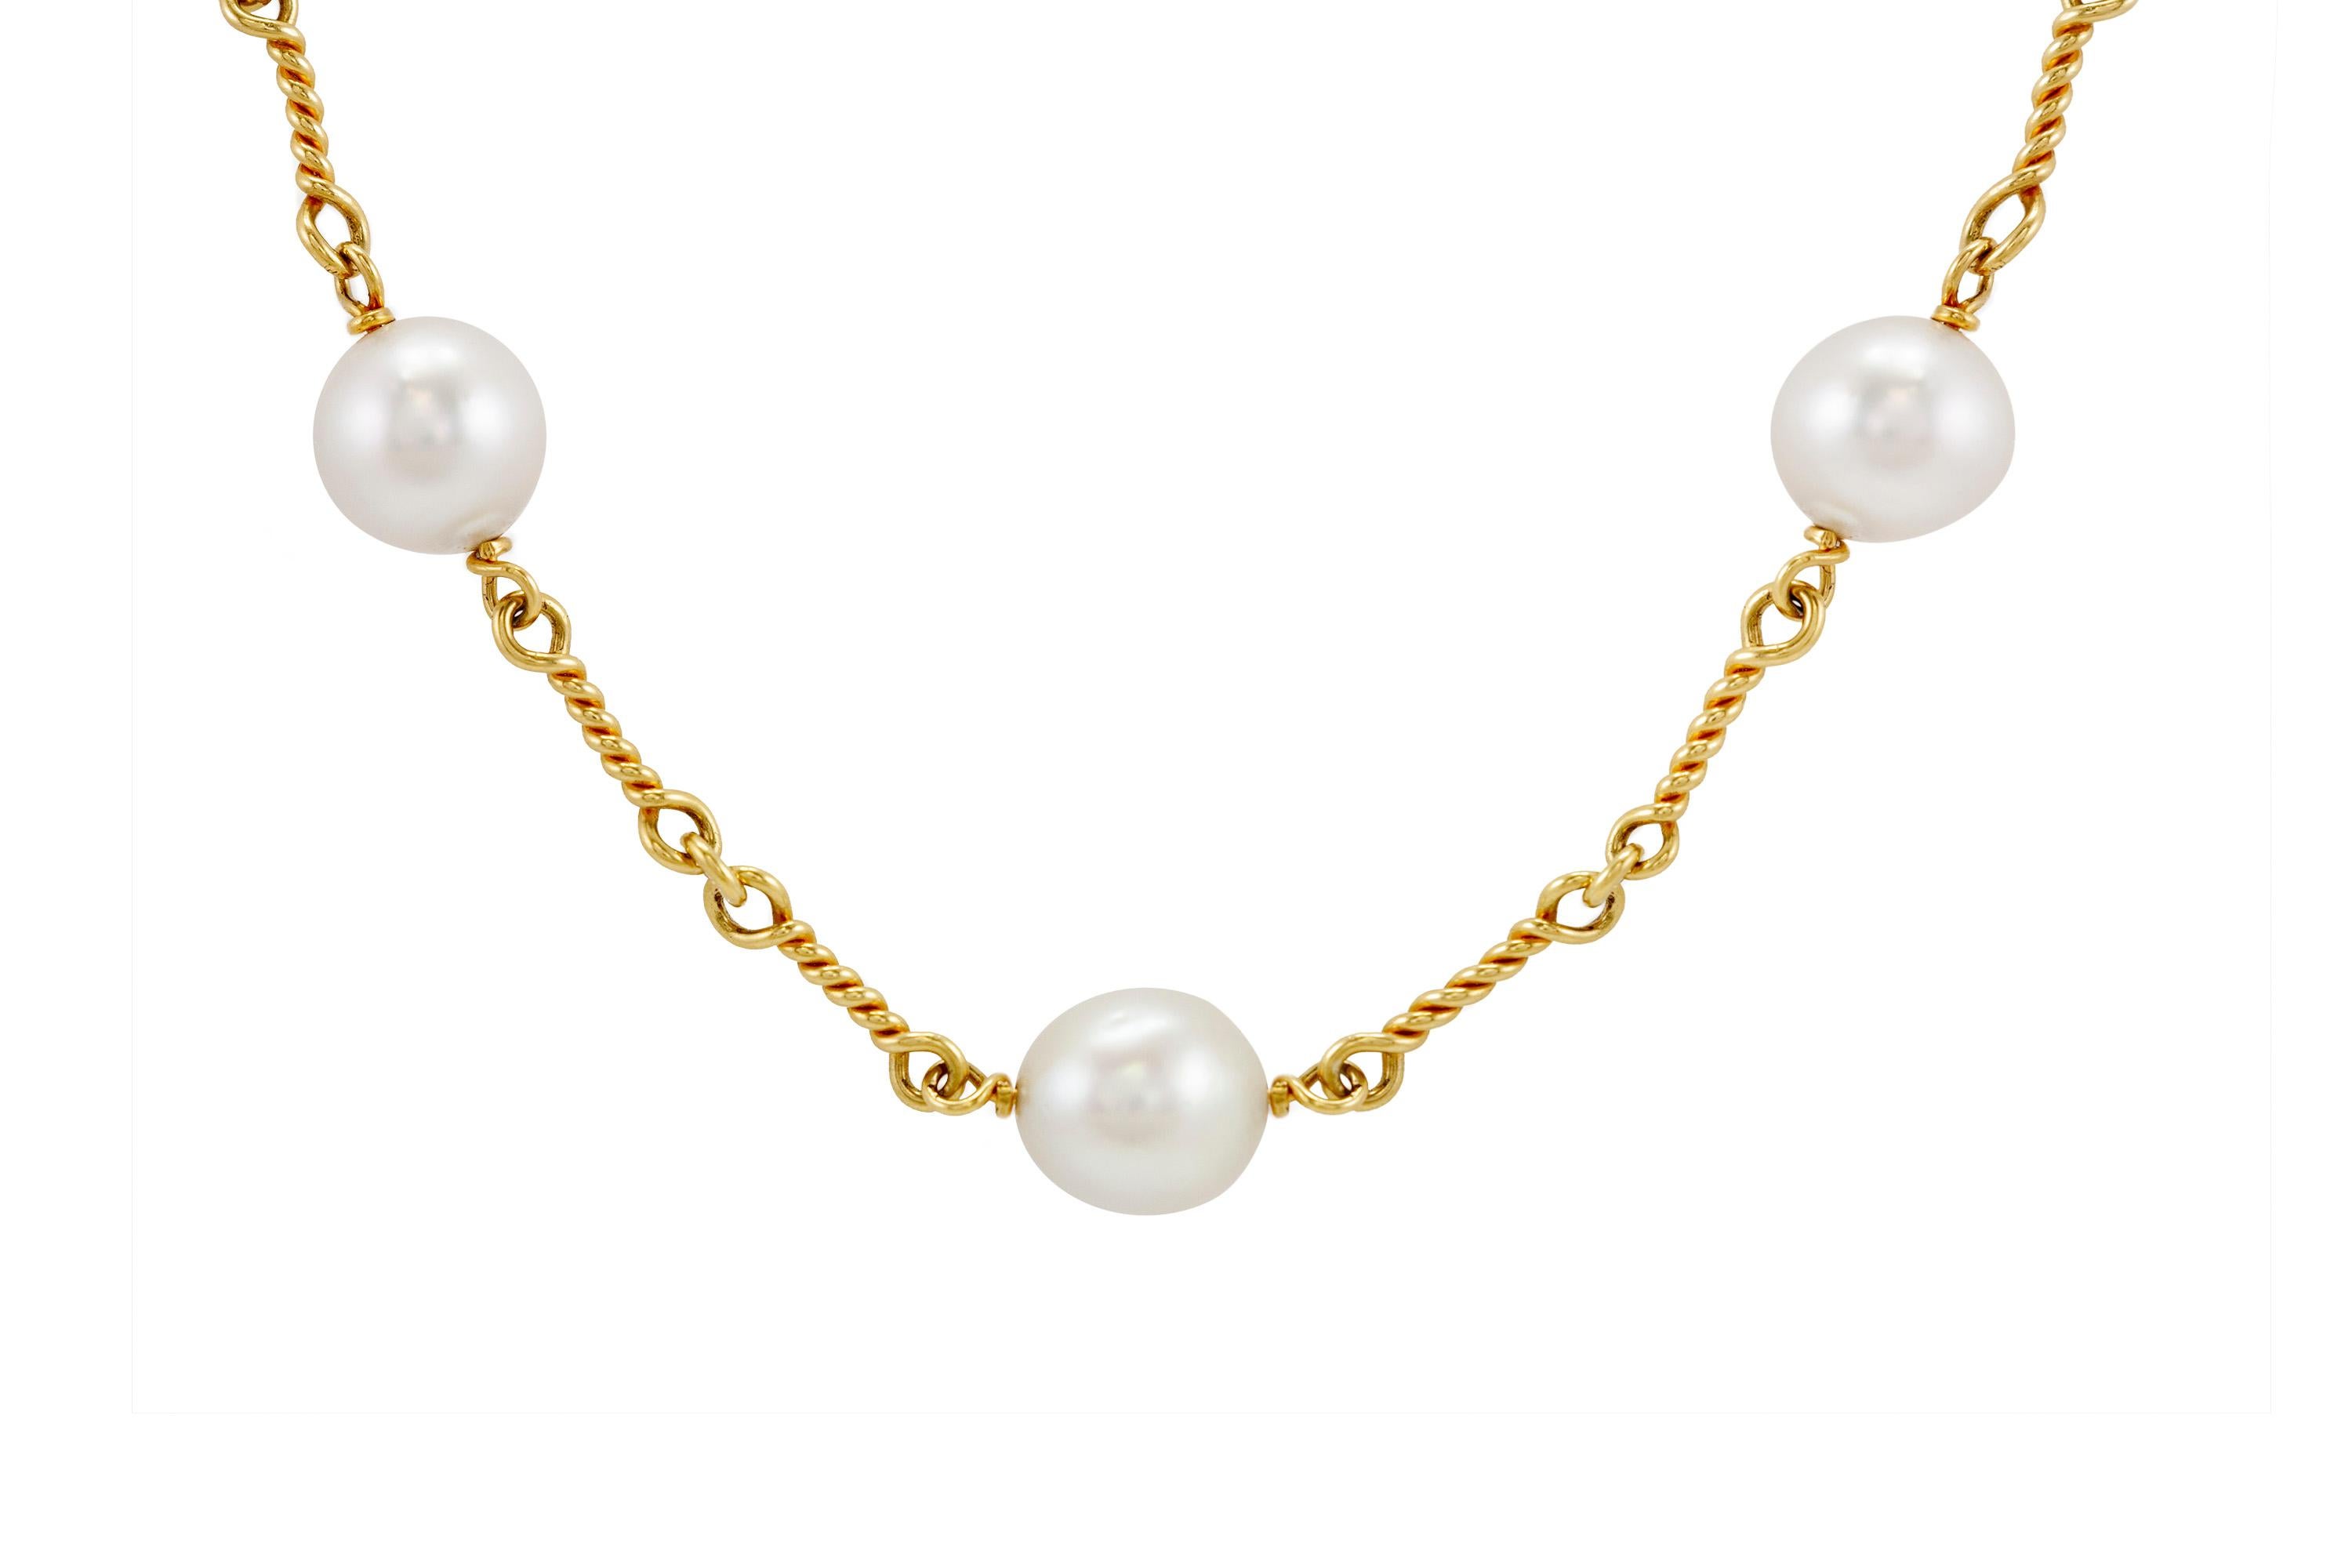 Le collier est en or jaune 18k finement ouvragé avec 7 perles de 14 mm en moyenne. 
Vers 2000.